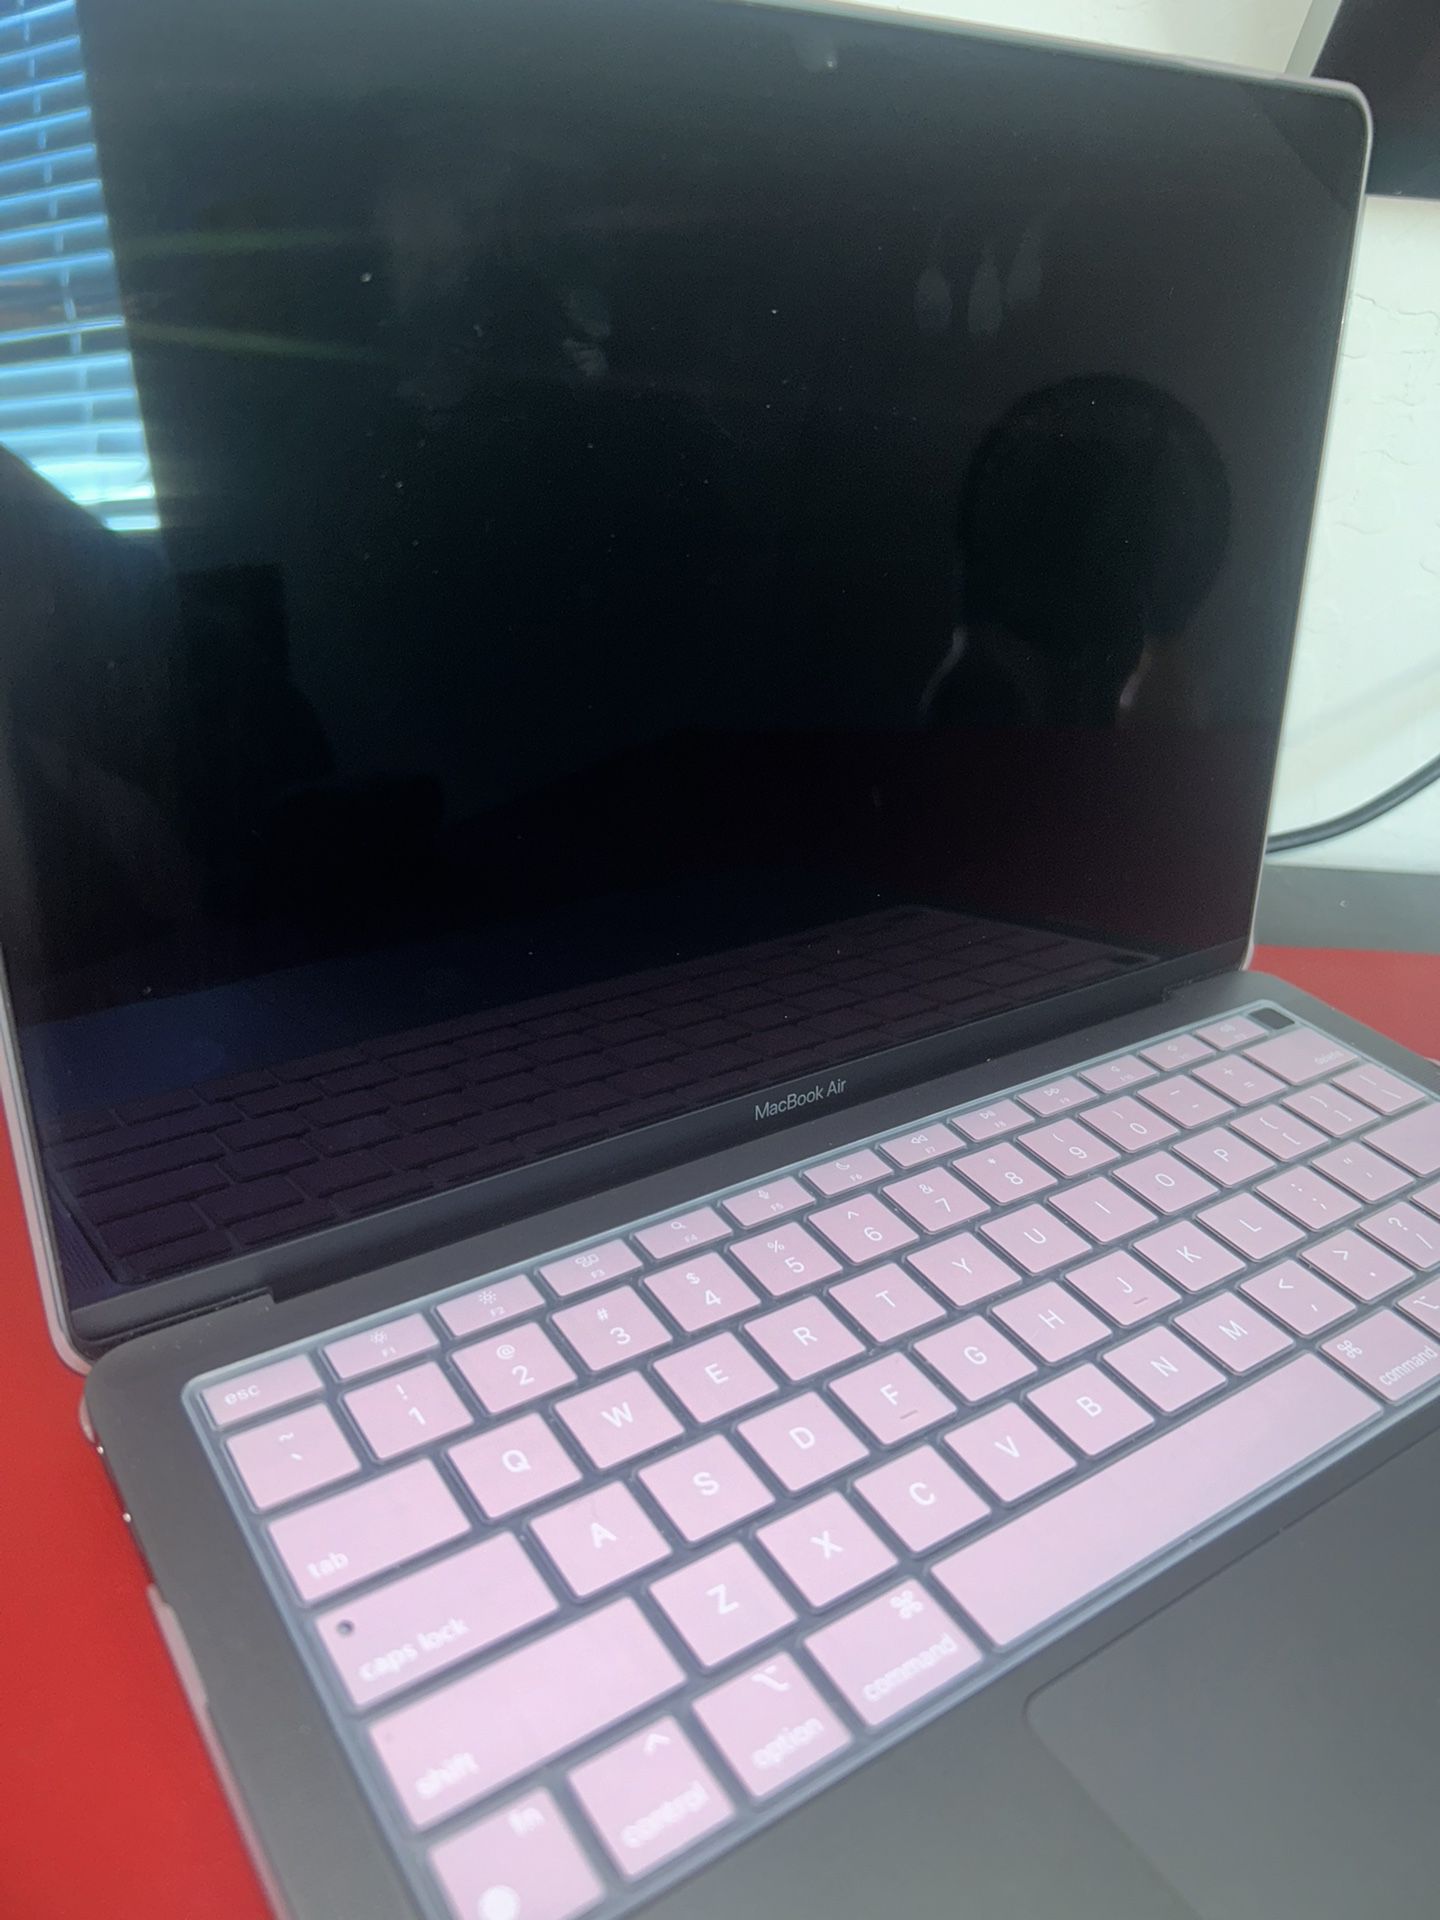 New MacBook Air $650